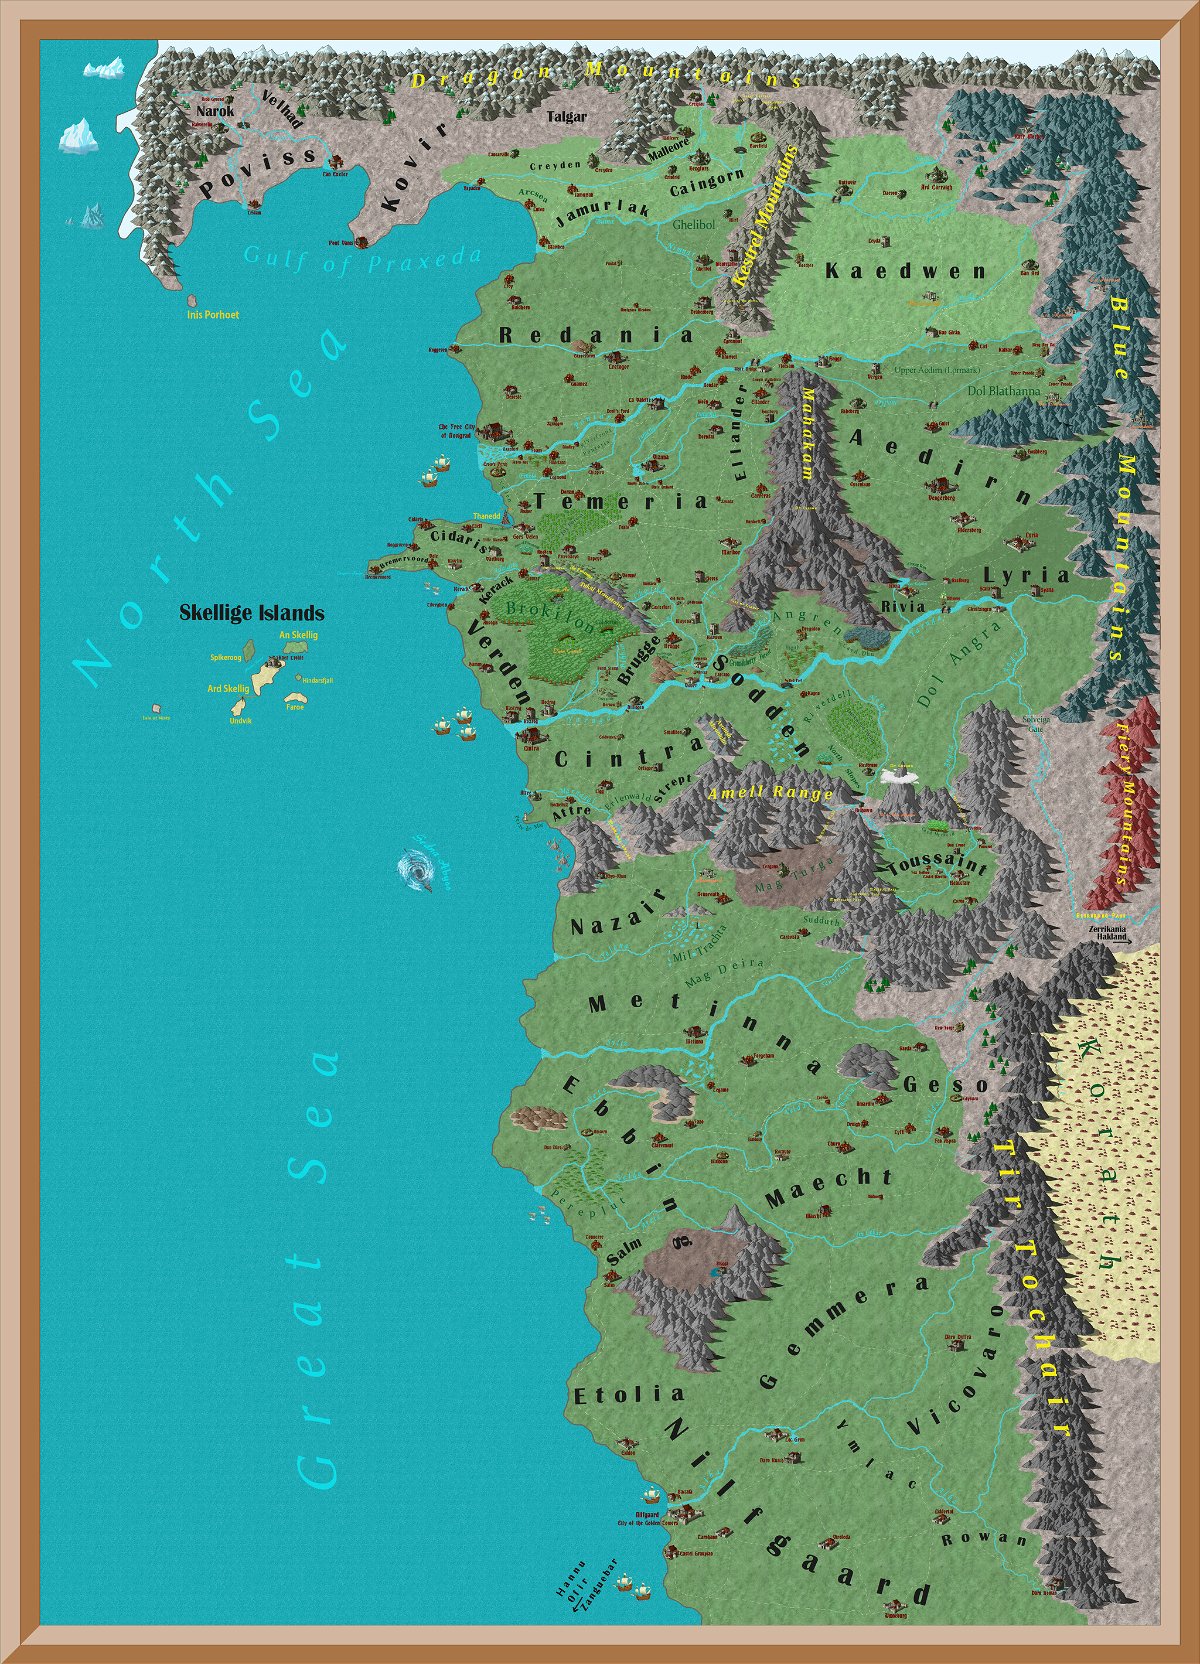 La mappa completa dell'universo di The Witcher